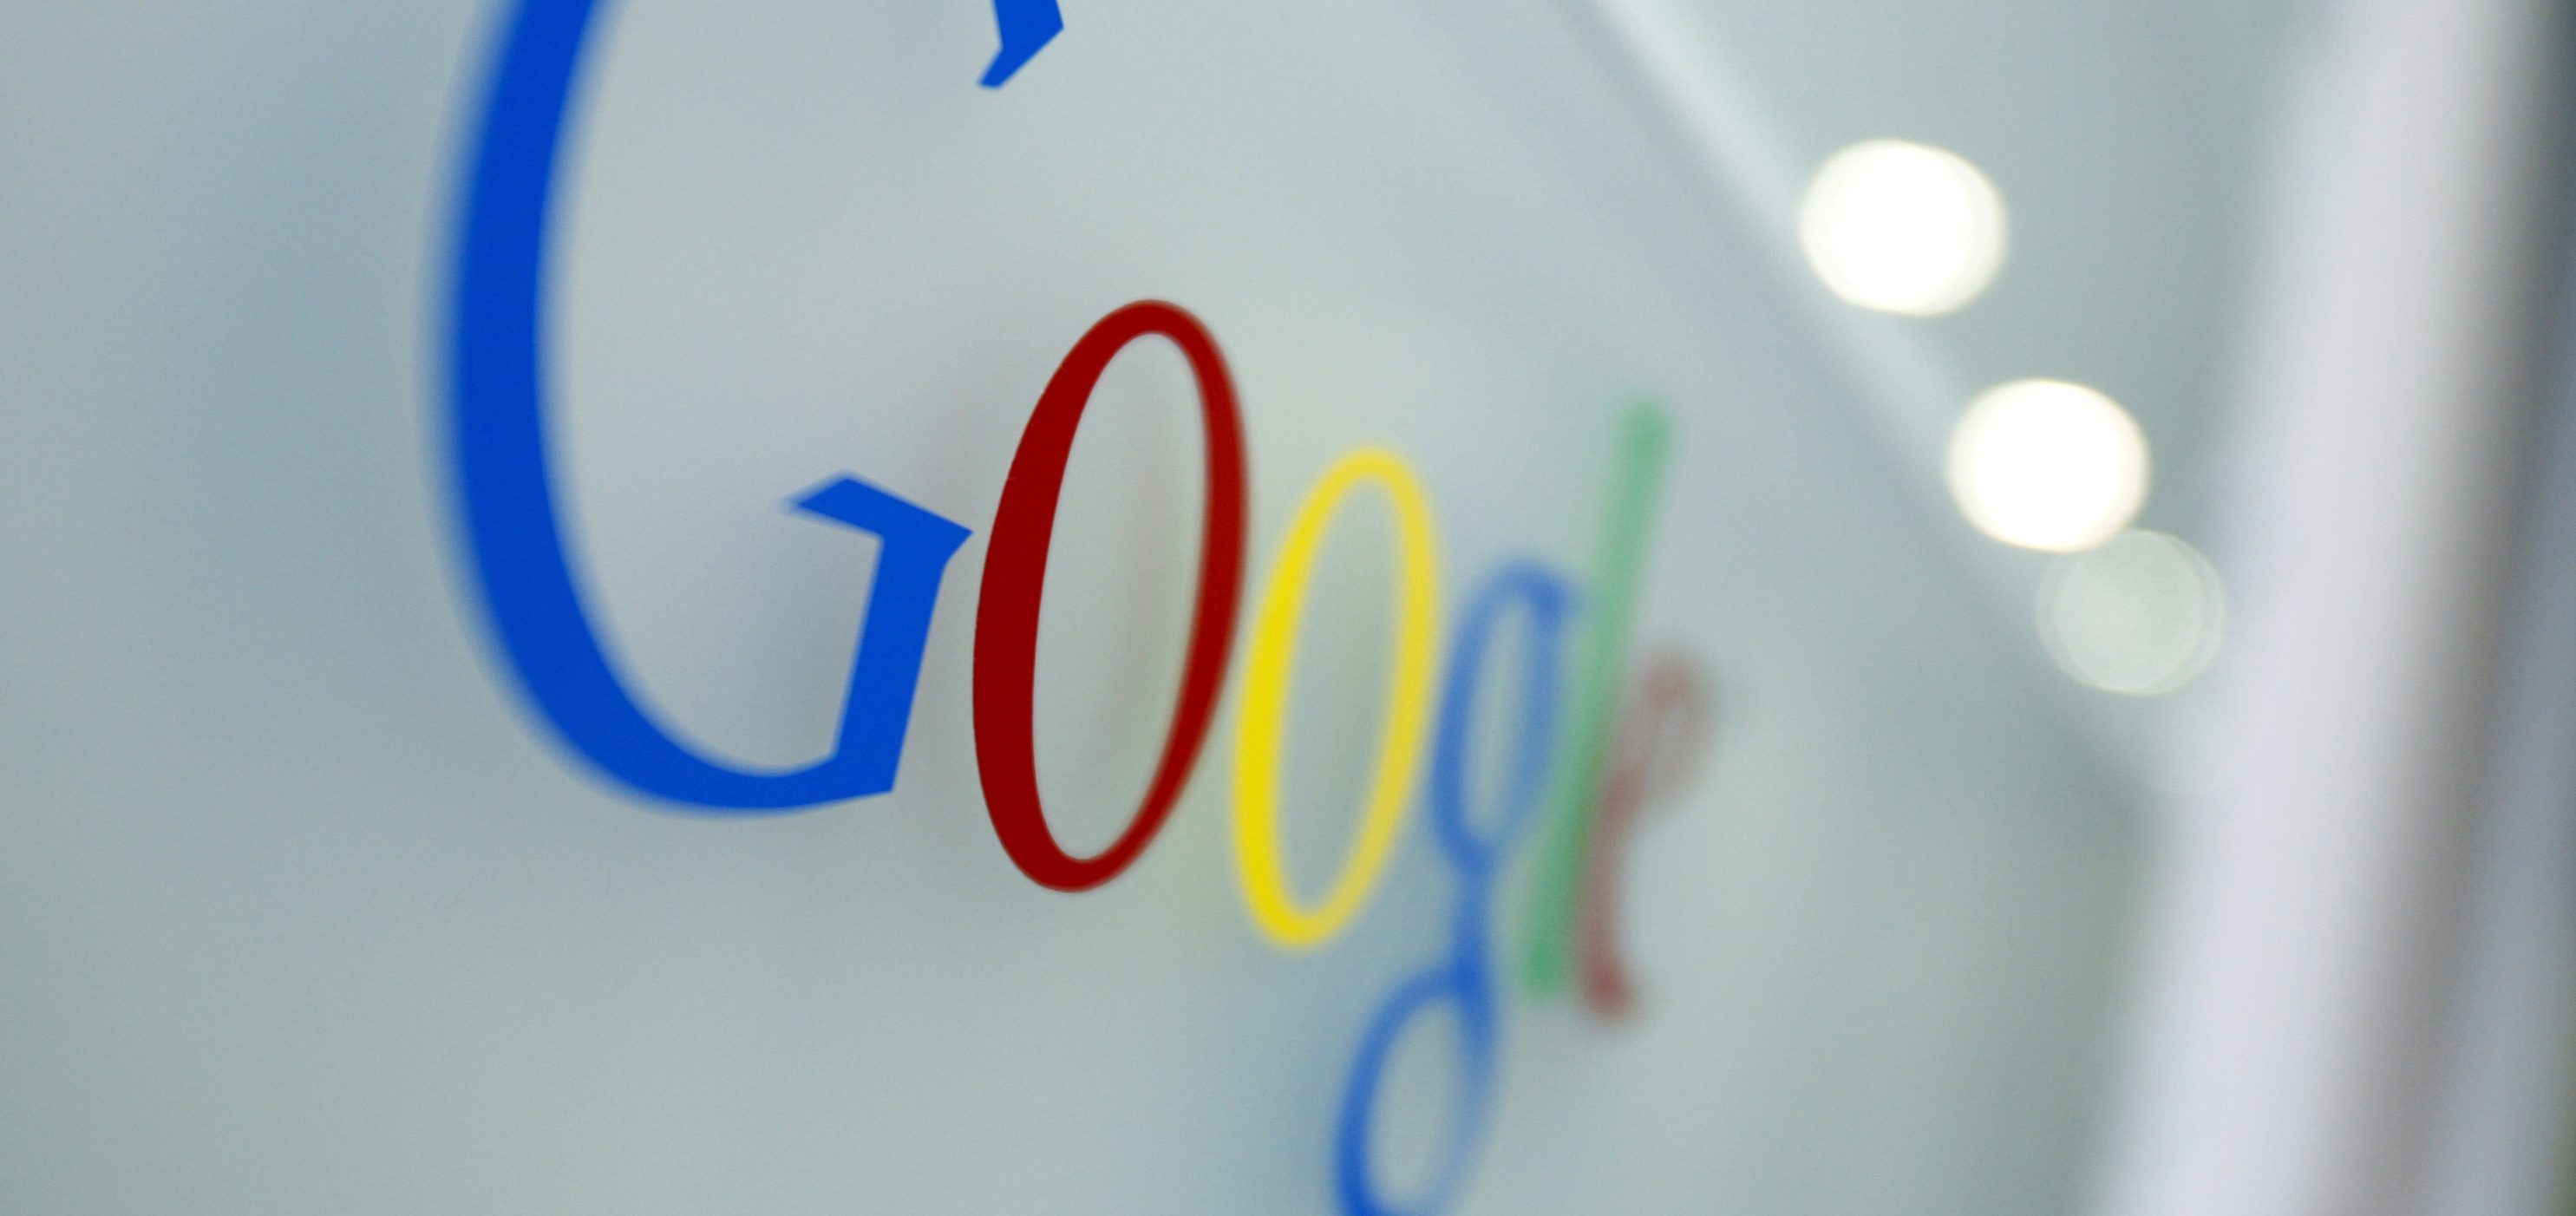 Rekord-Kartellstrafe für Google